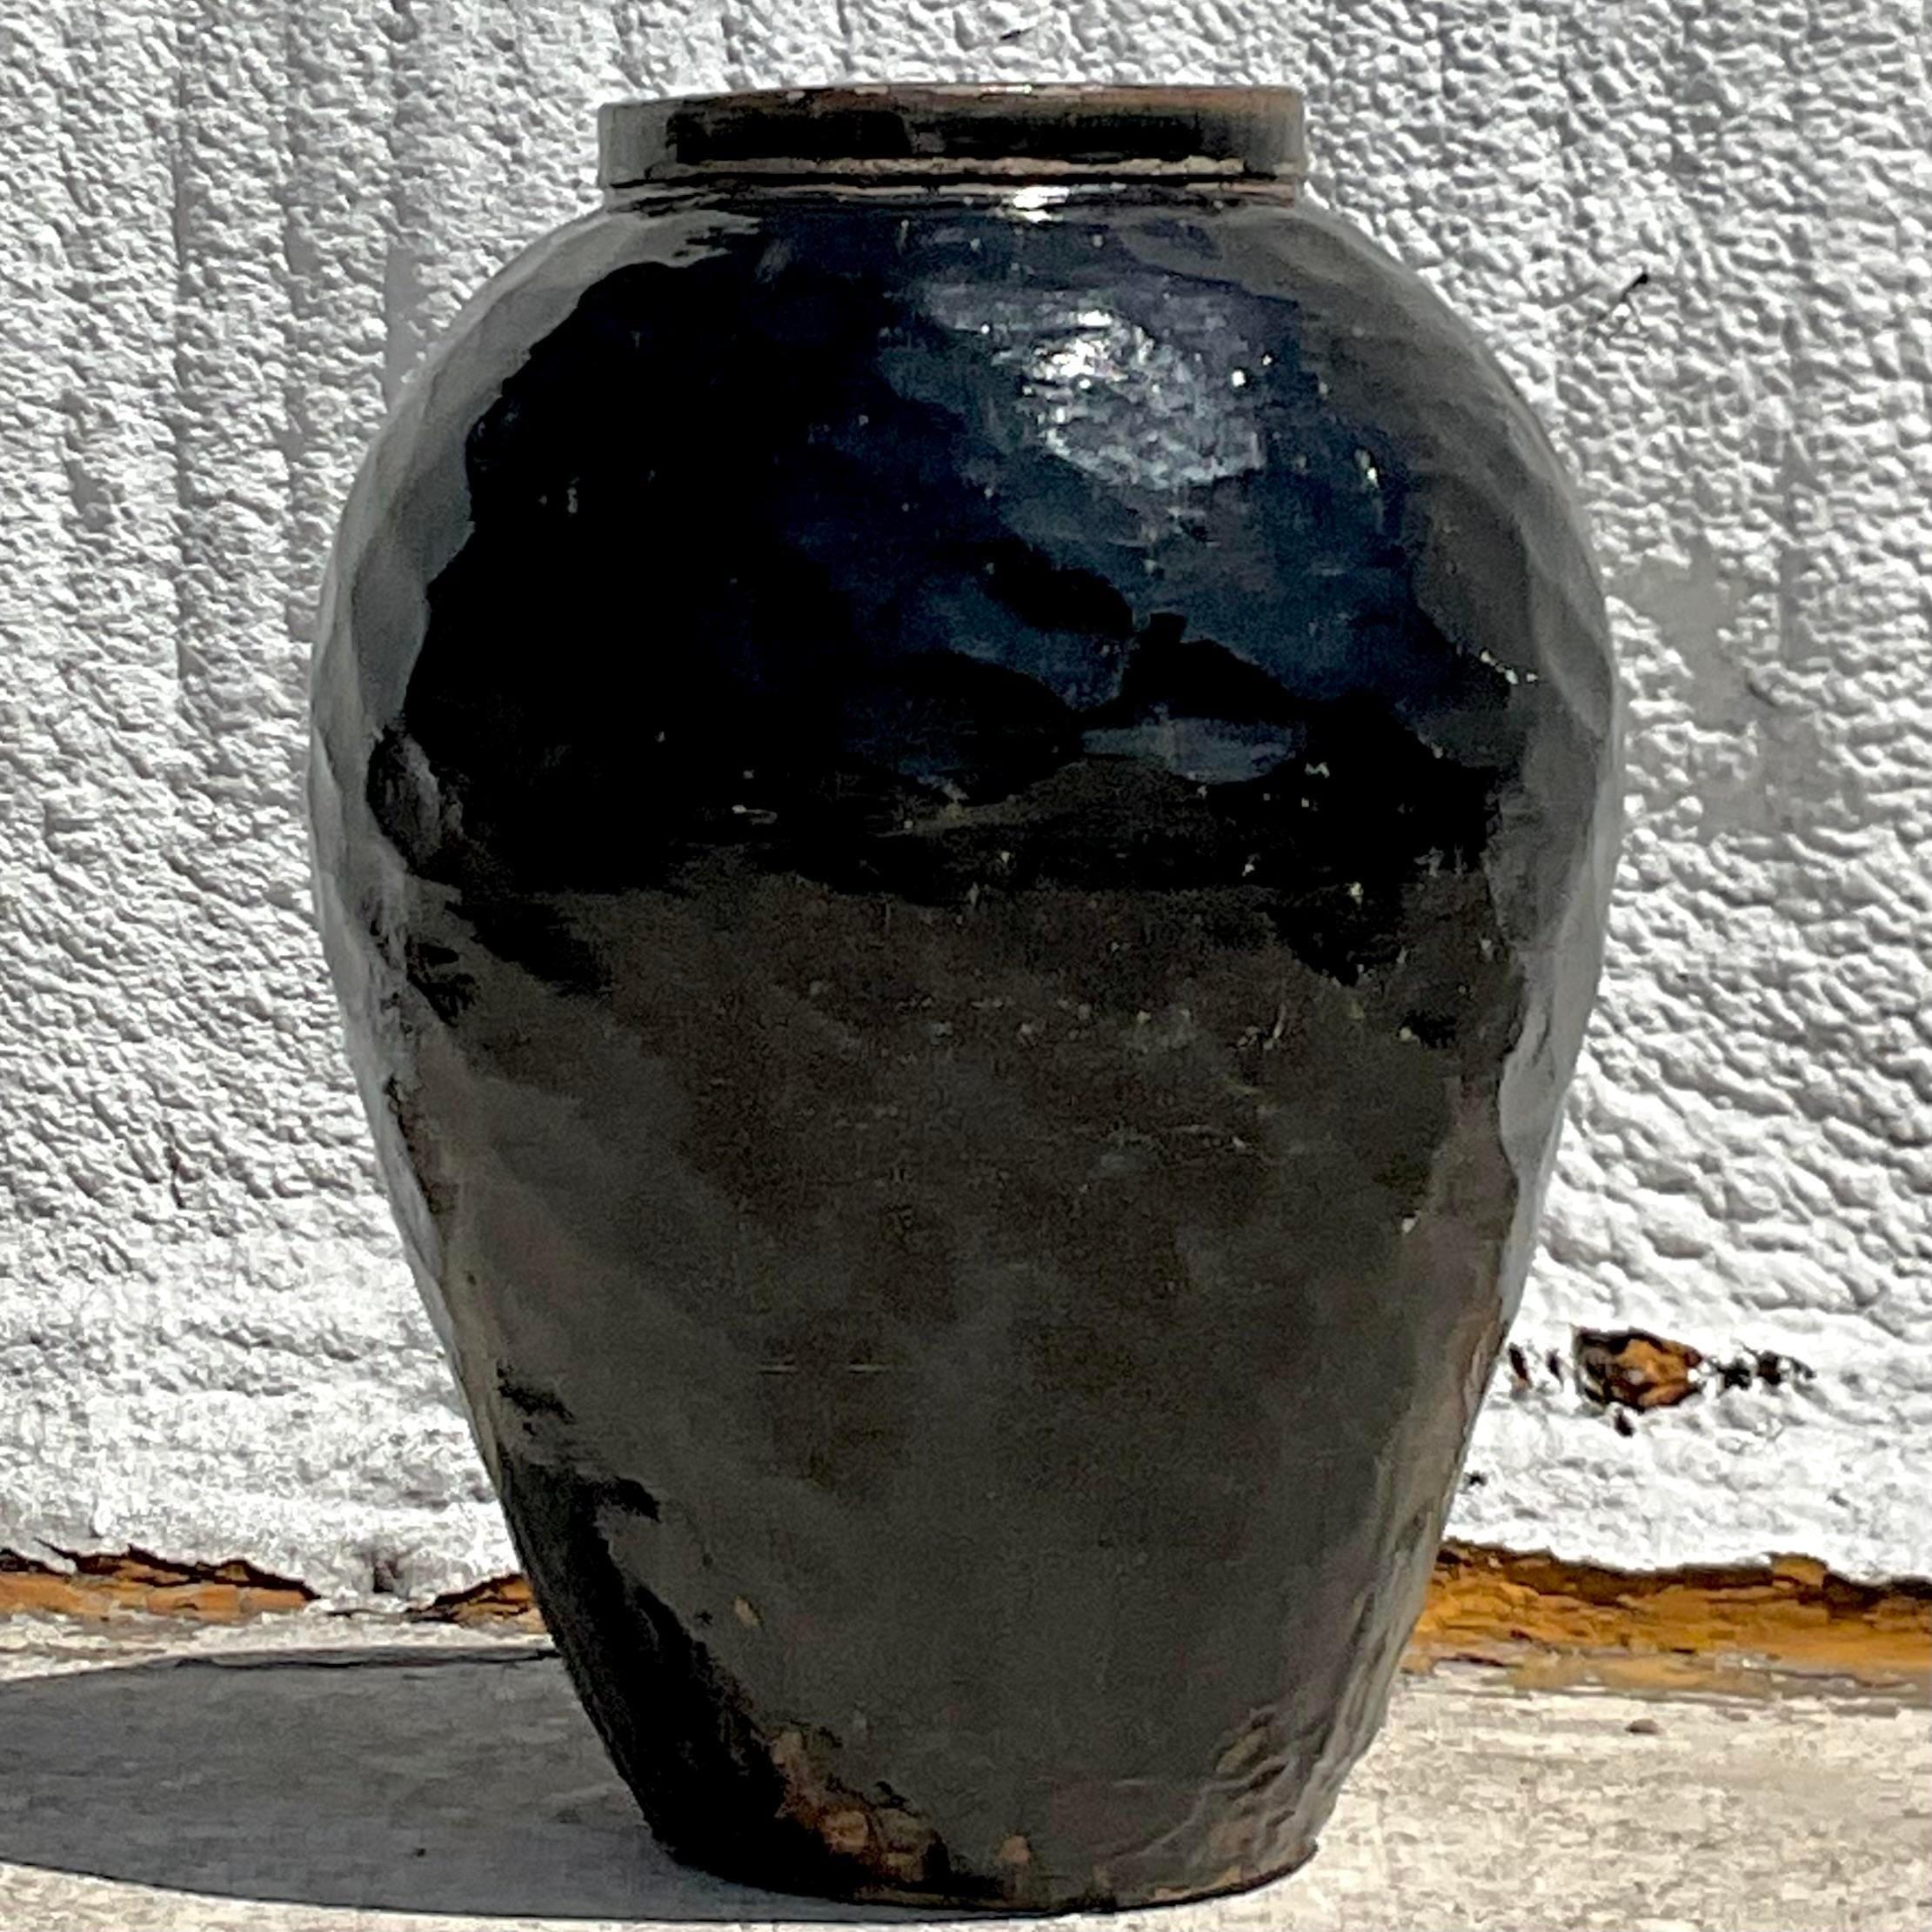 Une fantastique jardinière Boho vintage. Une urne chic en terre cuite émaillée avec une finition noire émaillée. Un design chic à facettes. Acquis auprès d'une succession à New York.